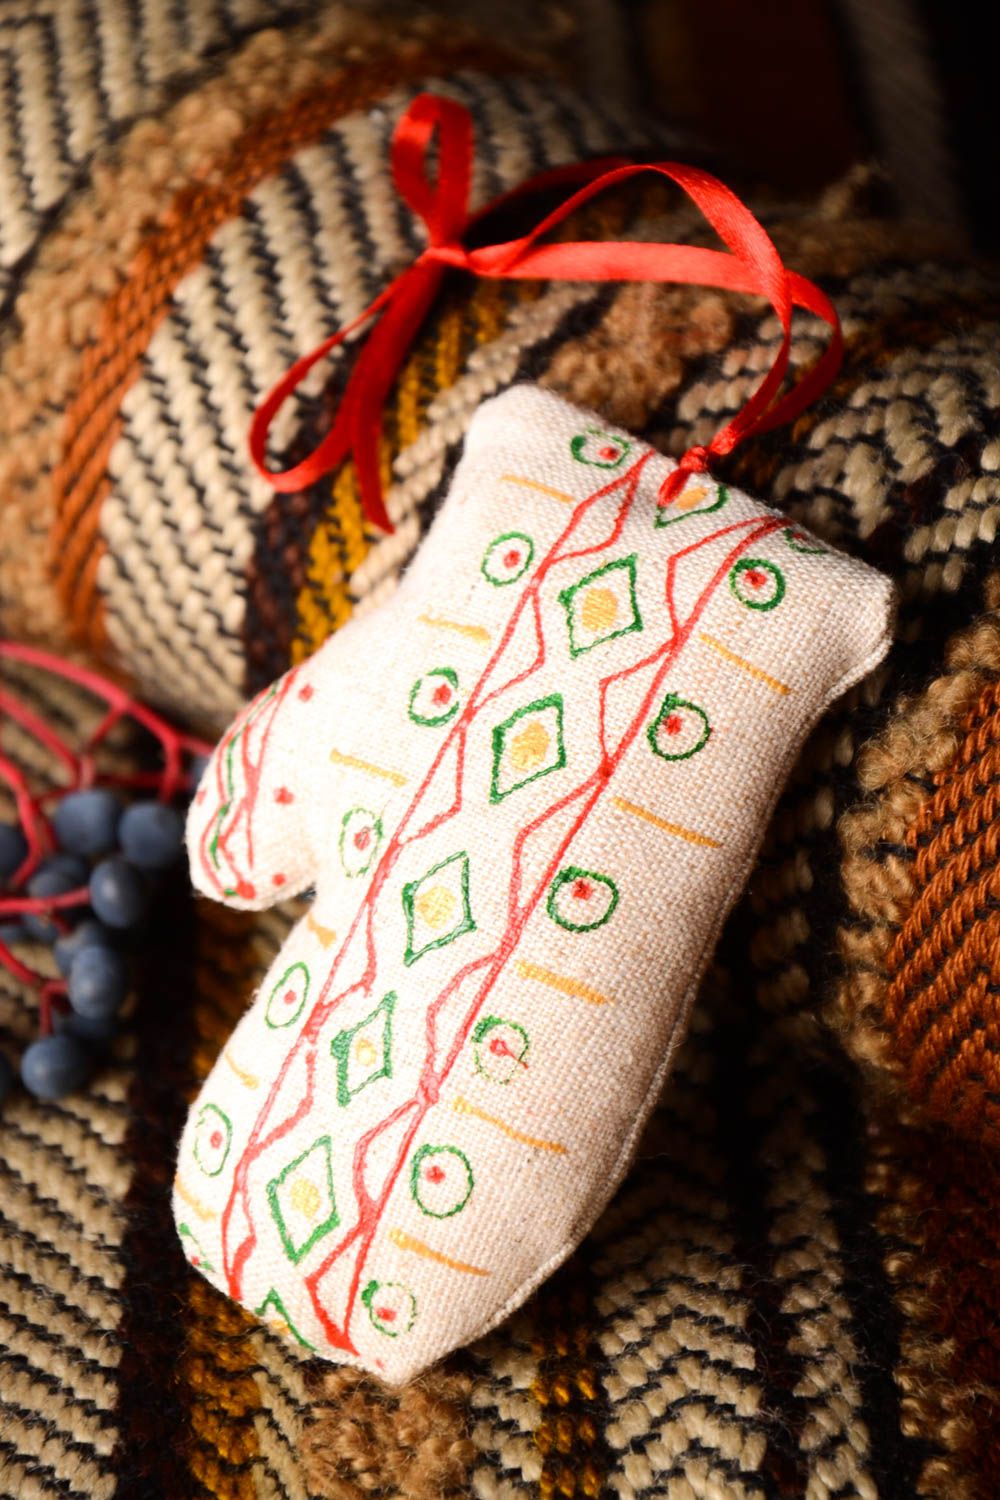 Textil Spielzeug handmade Deko Anhänger Designer Geschenk Deko zum Aufhängen foto 2